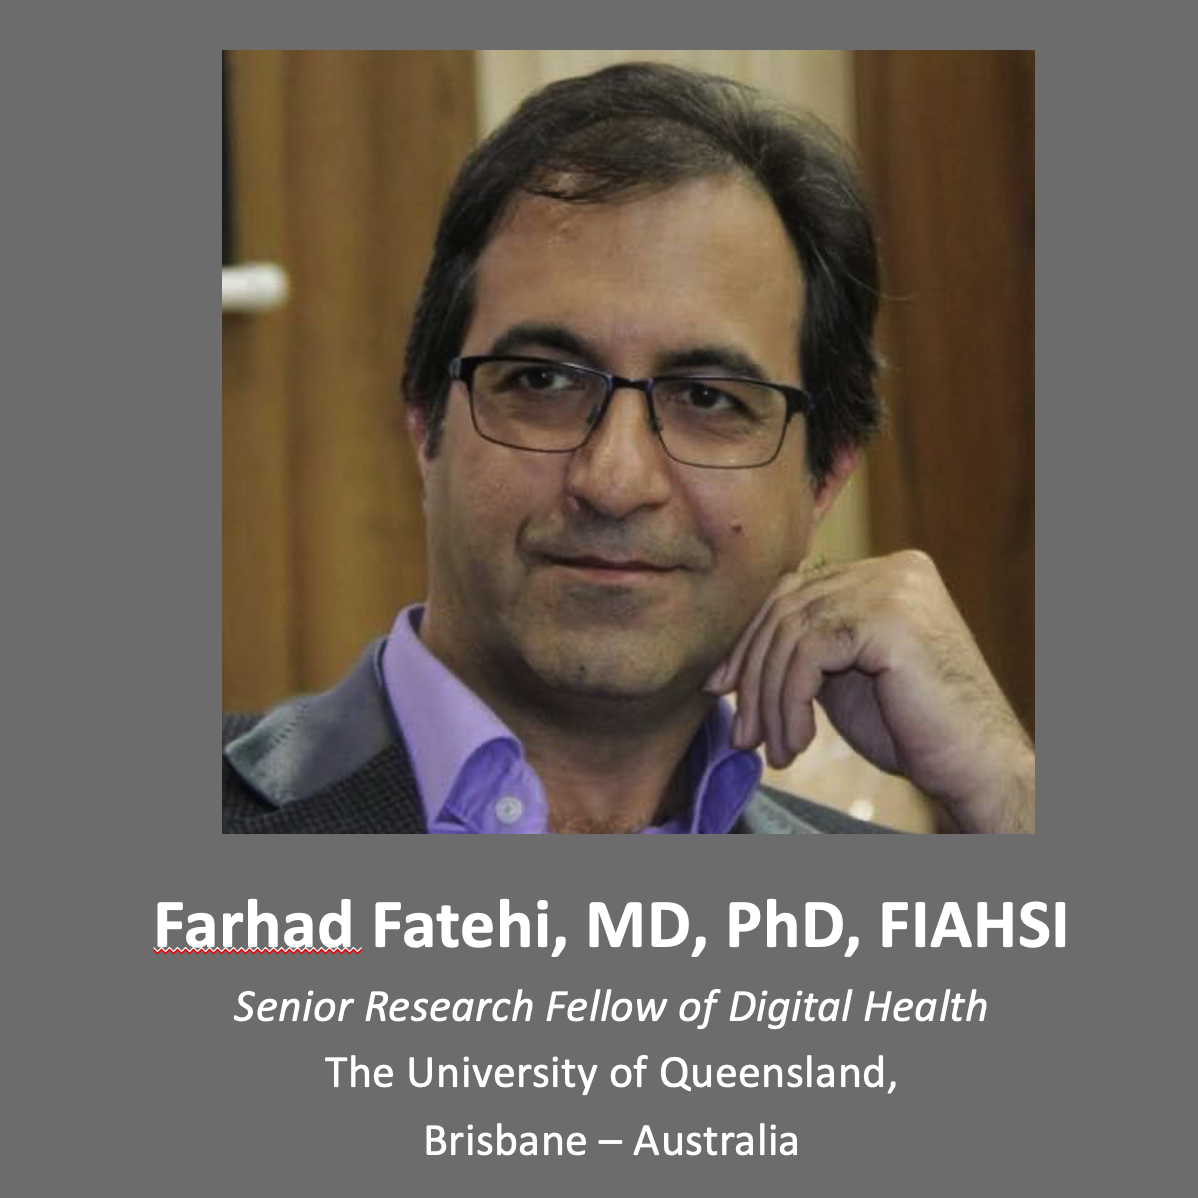 Farhad Fatehi